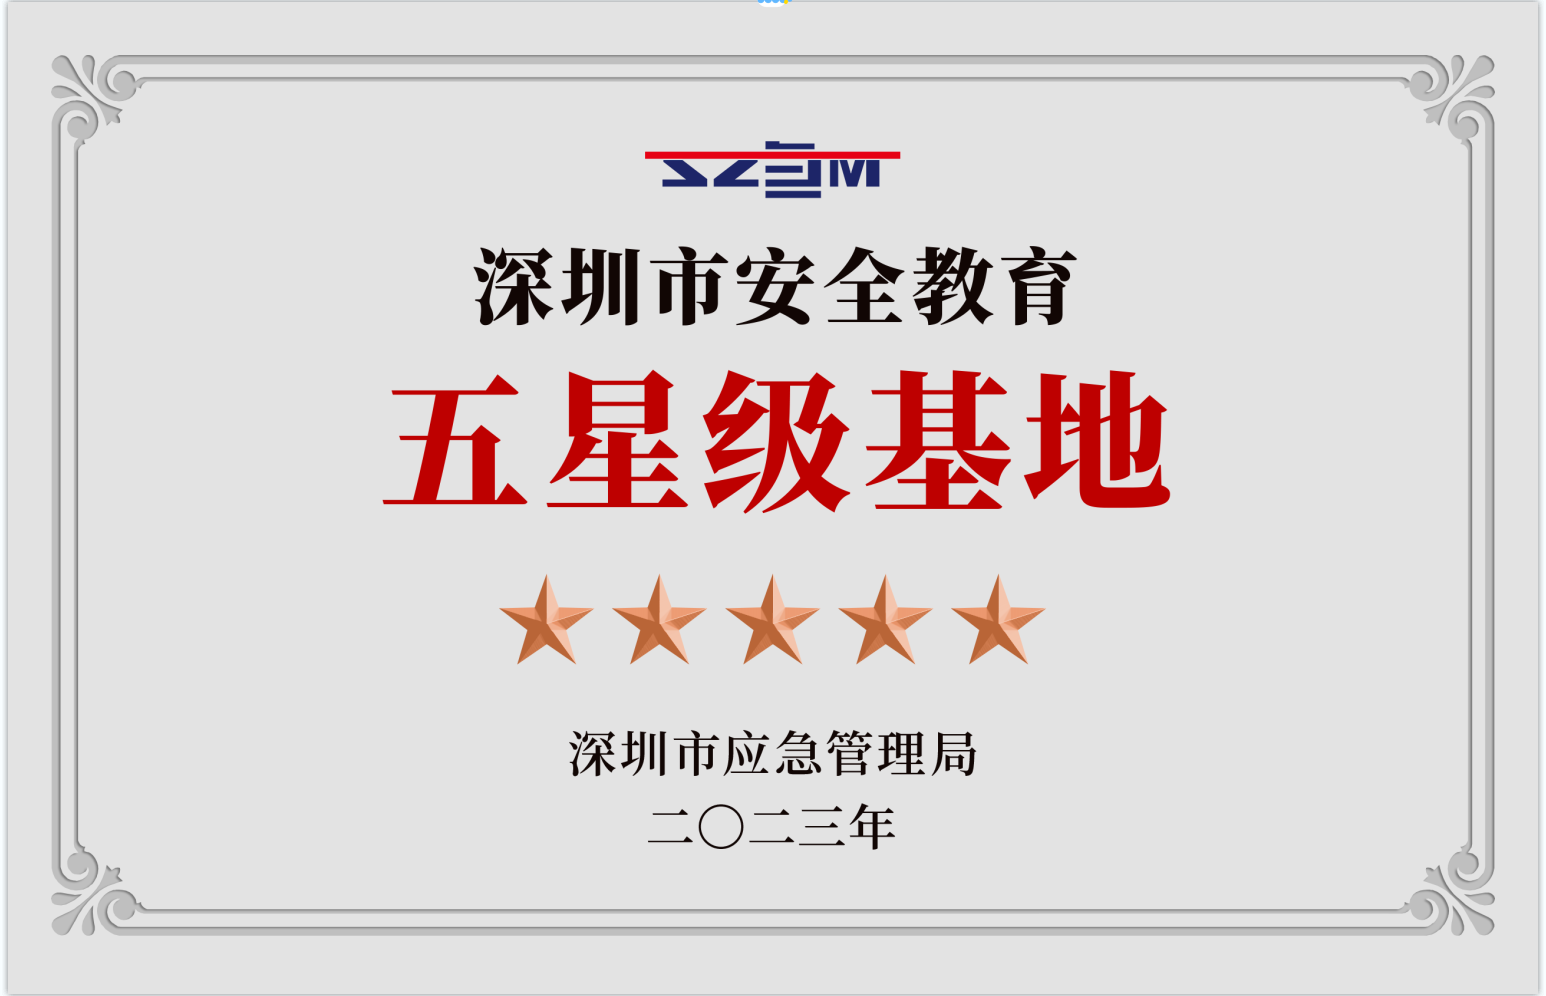 龙华区安全教育基地获评深圳市五星级安全教育基地